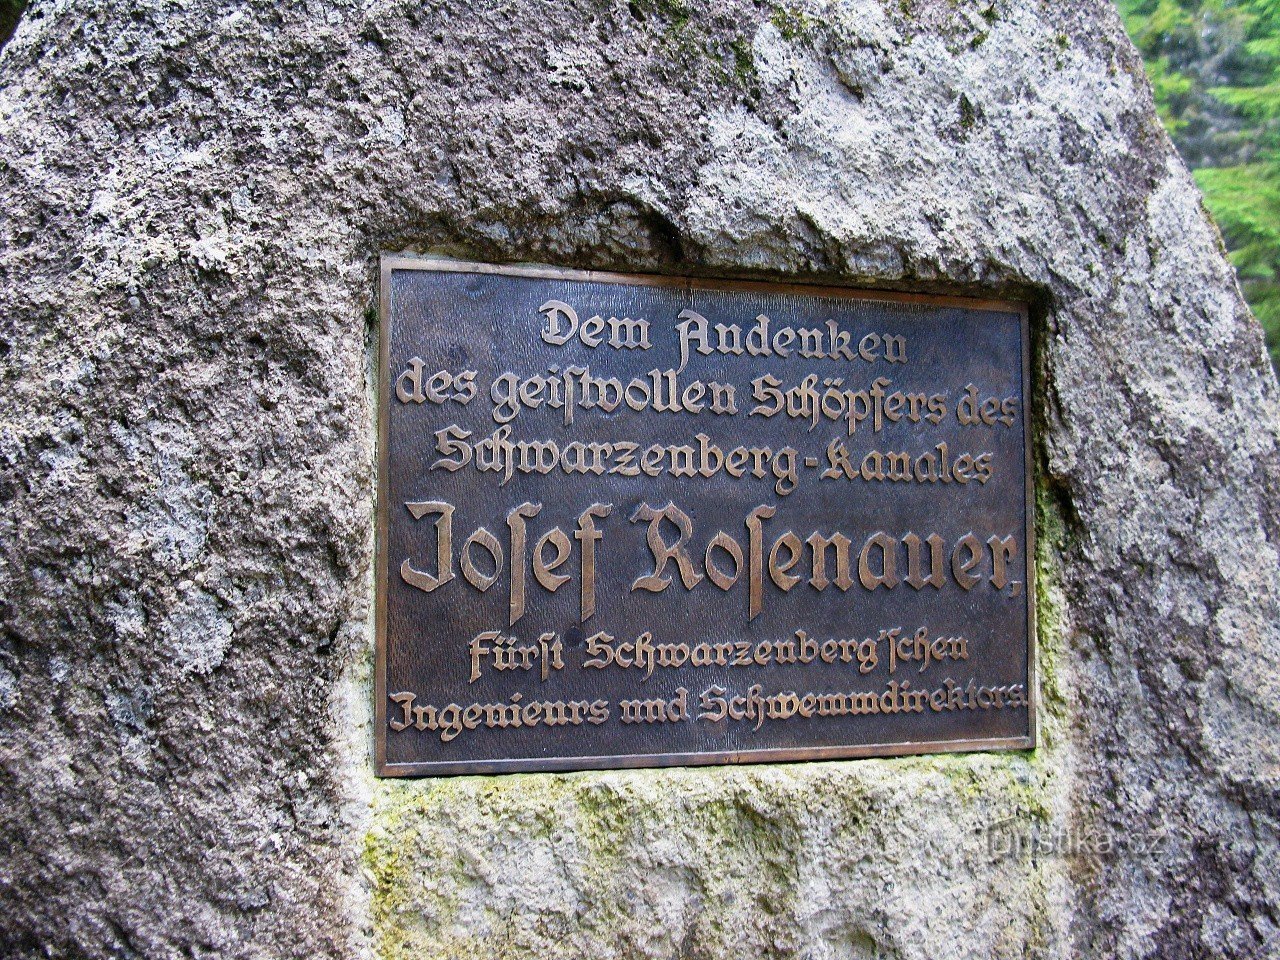 Muistomerkin teksti on saksaksi